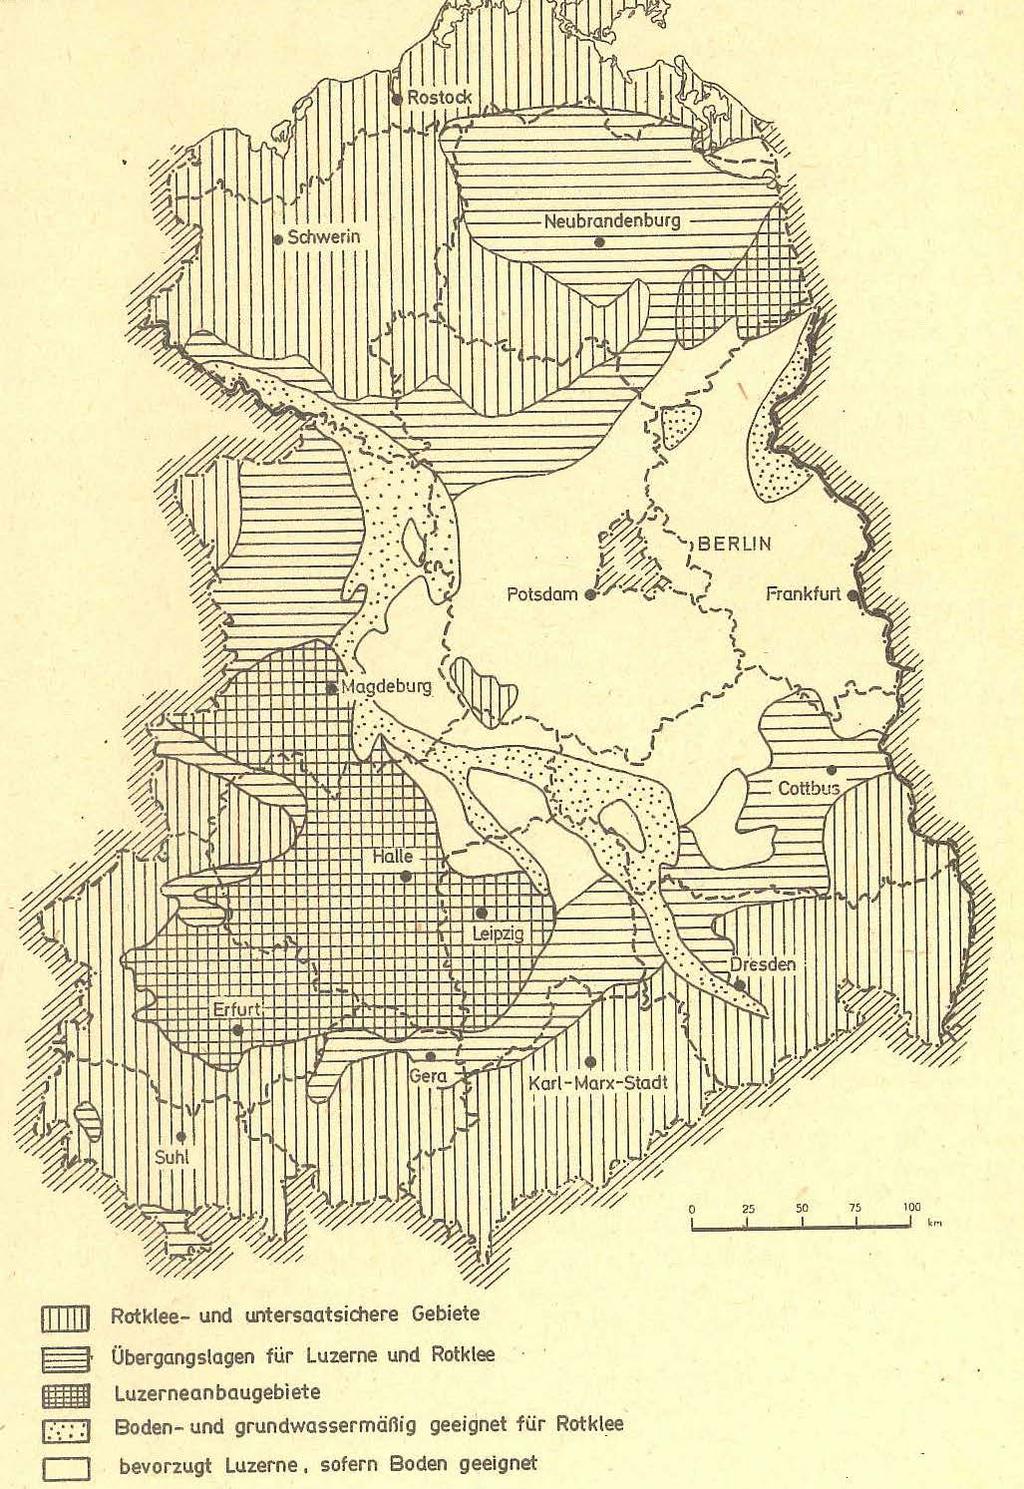 Rotklee- und Luzerneanbaugebiete in Ostdeutschland (nach